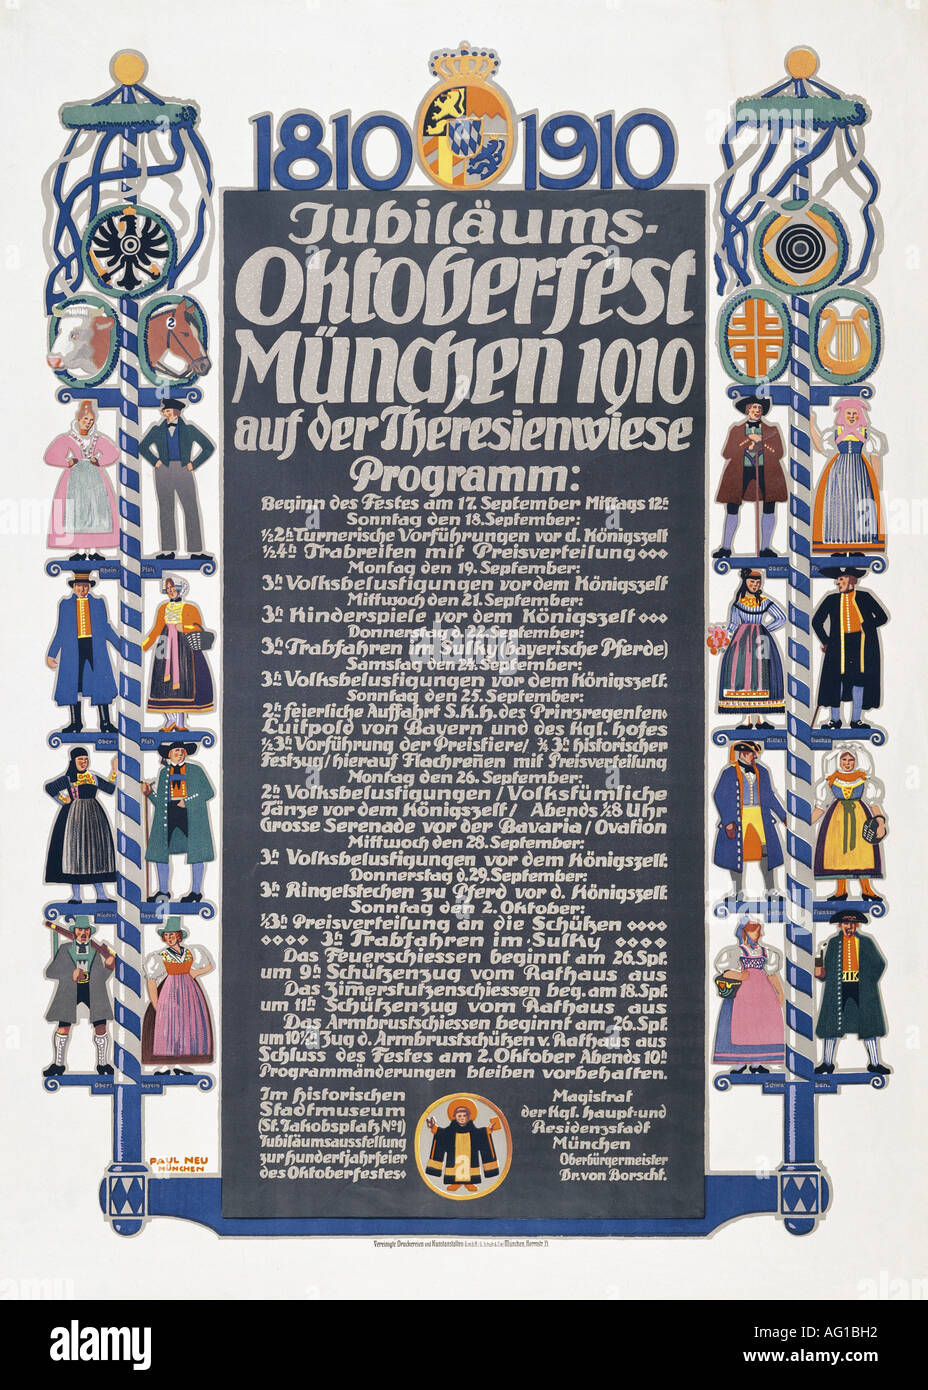 Festessen, Messen, Jubiläums - Oktoberfest, München, 1910, Stockfoto